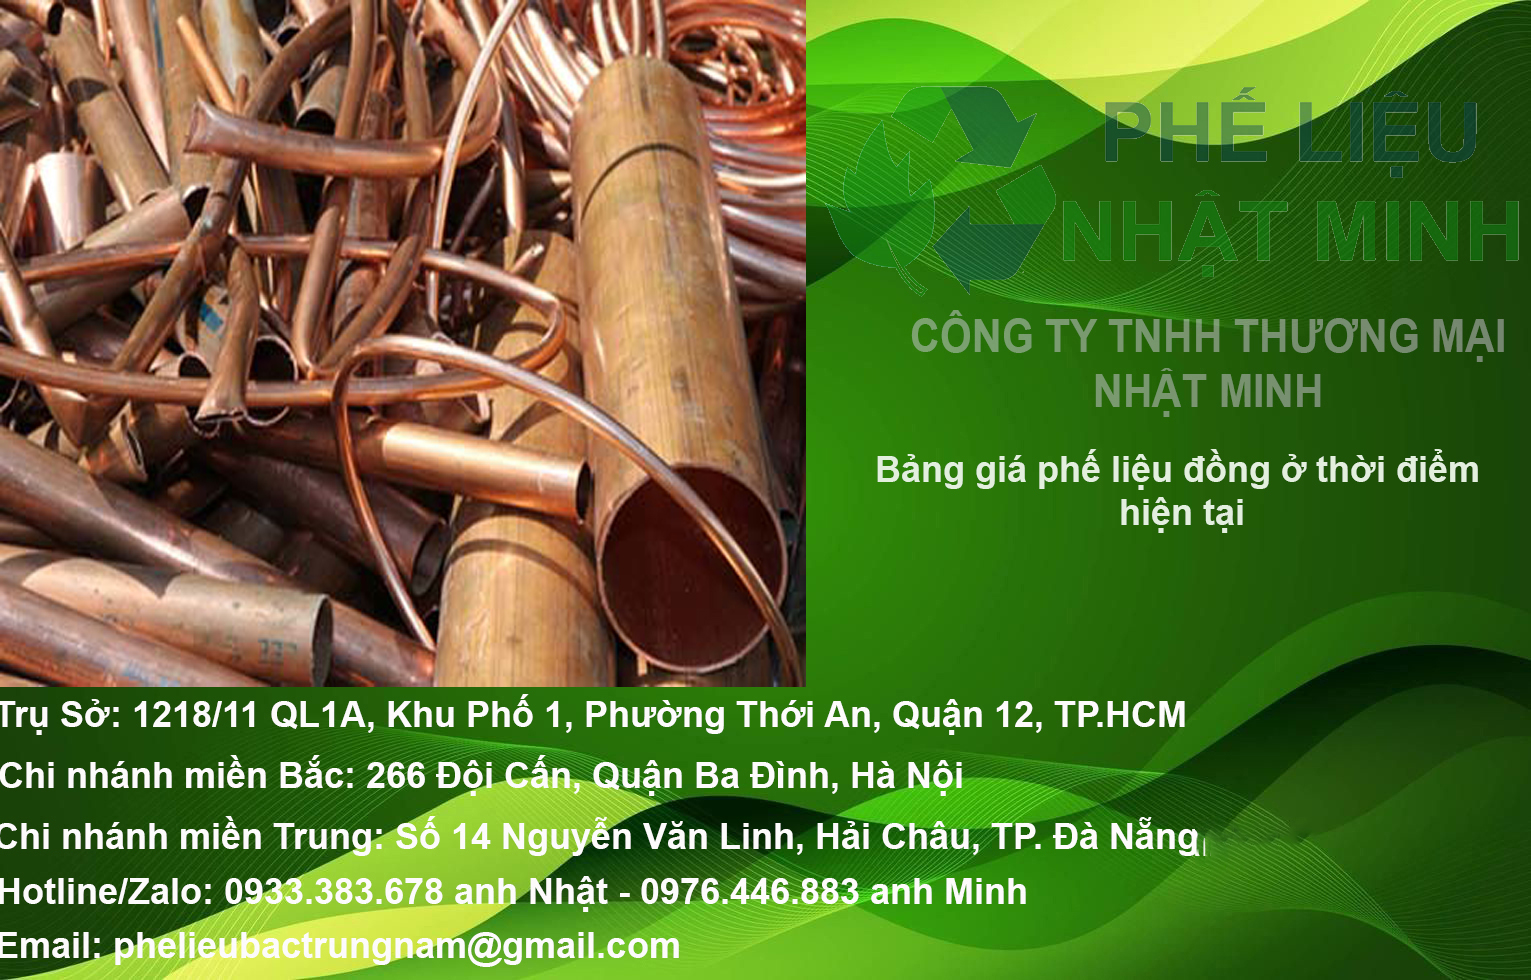 Mua Phe Lieu Dong Cong Ty Nhat Minh